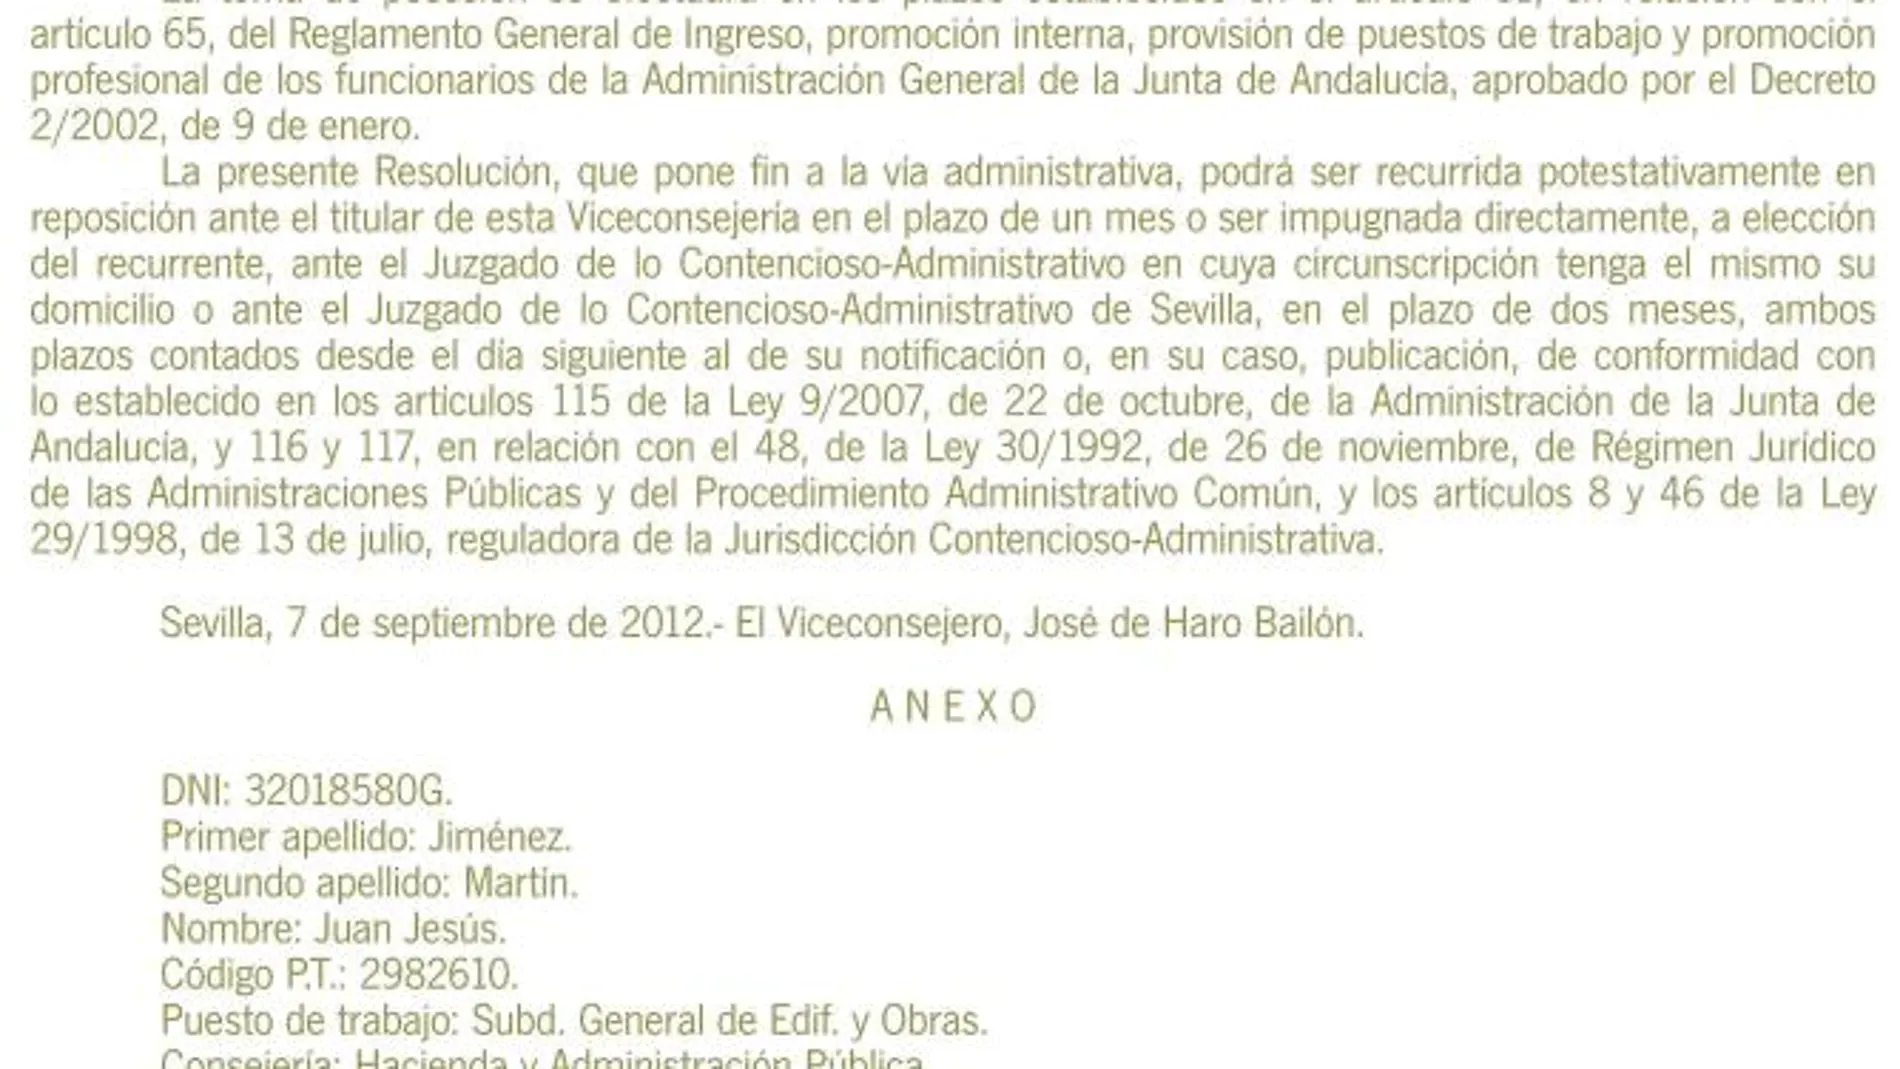 Reproducción del nuevo nombramiento de Juan Jesús Jiménez Martín, publicado ayer en el Boletín Oficial de la Junta de Andalucía (BOJA)